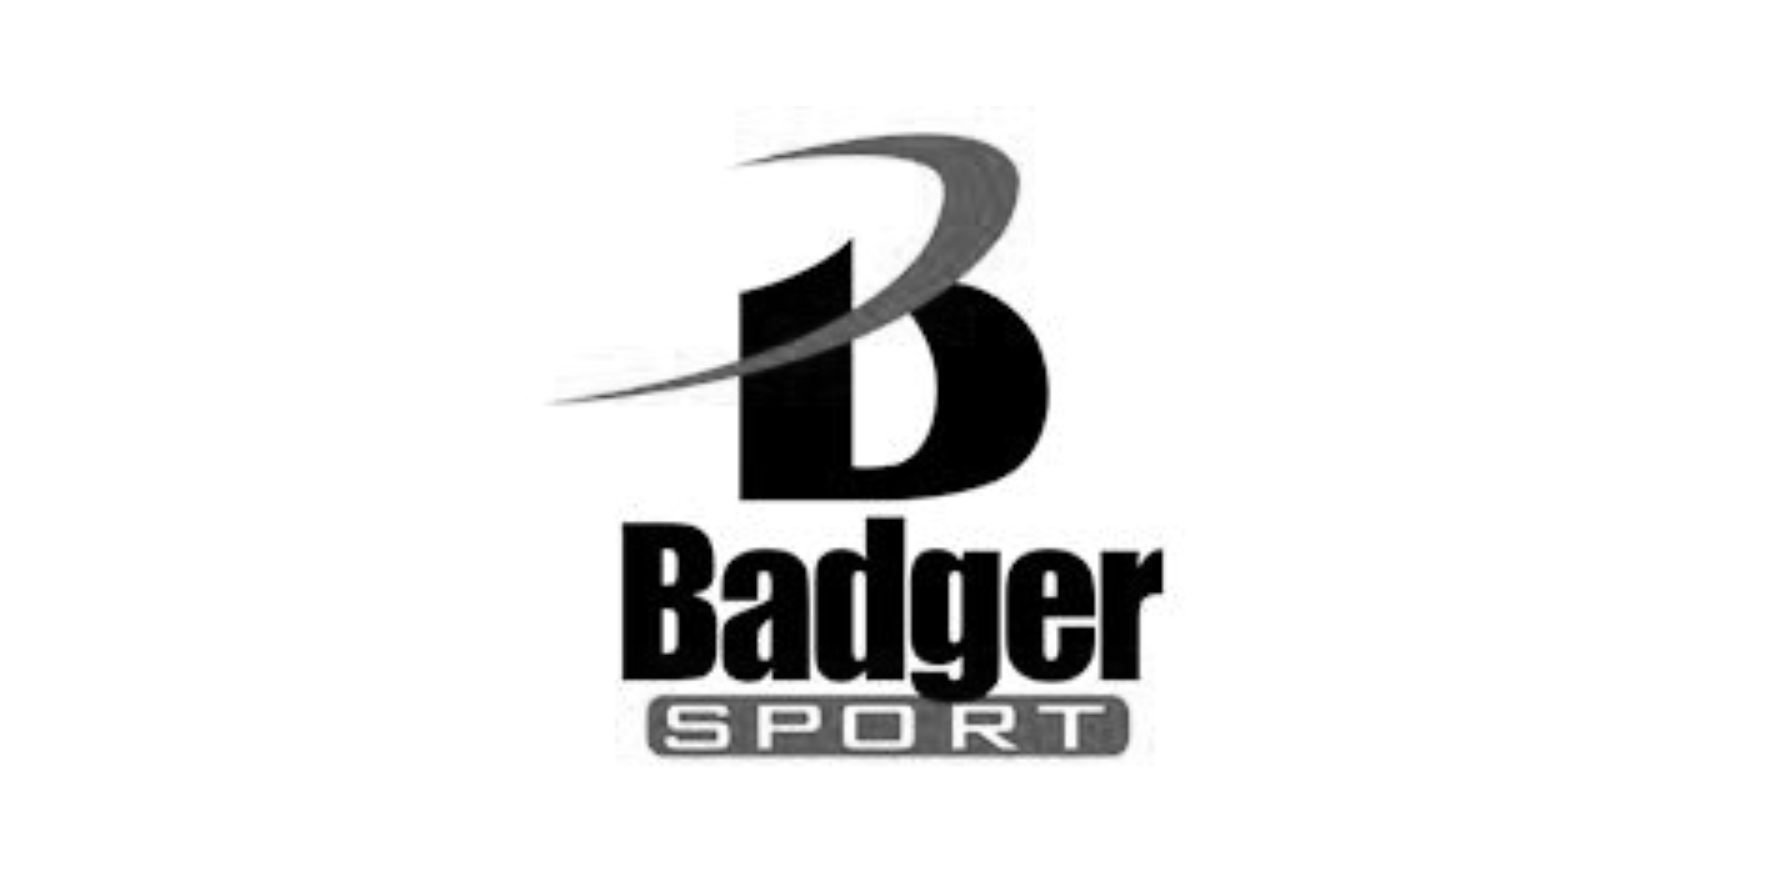 Badger Sport.png